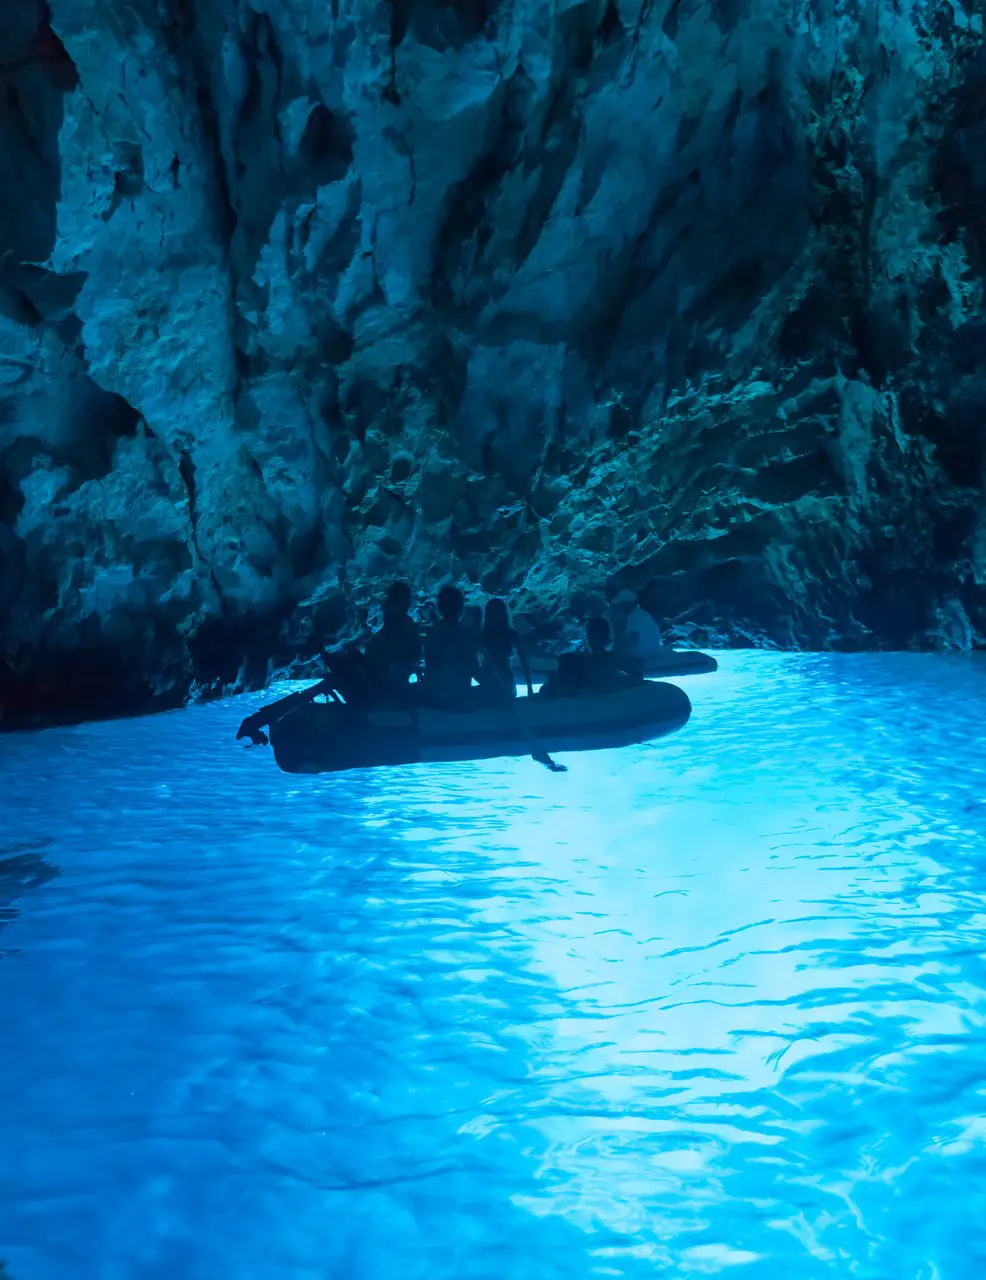 Inside the Blue Cave in Croatia